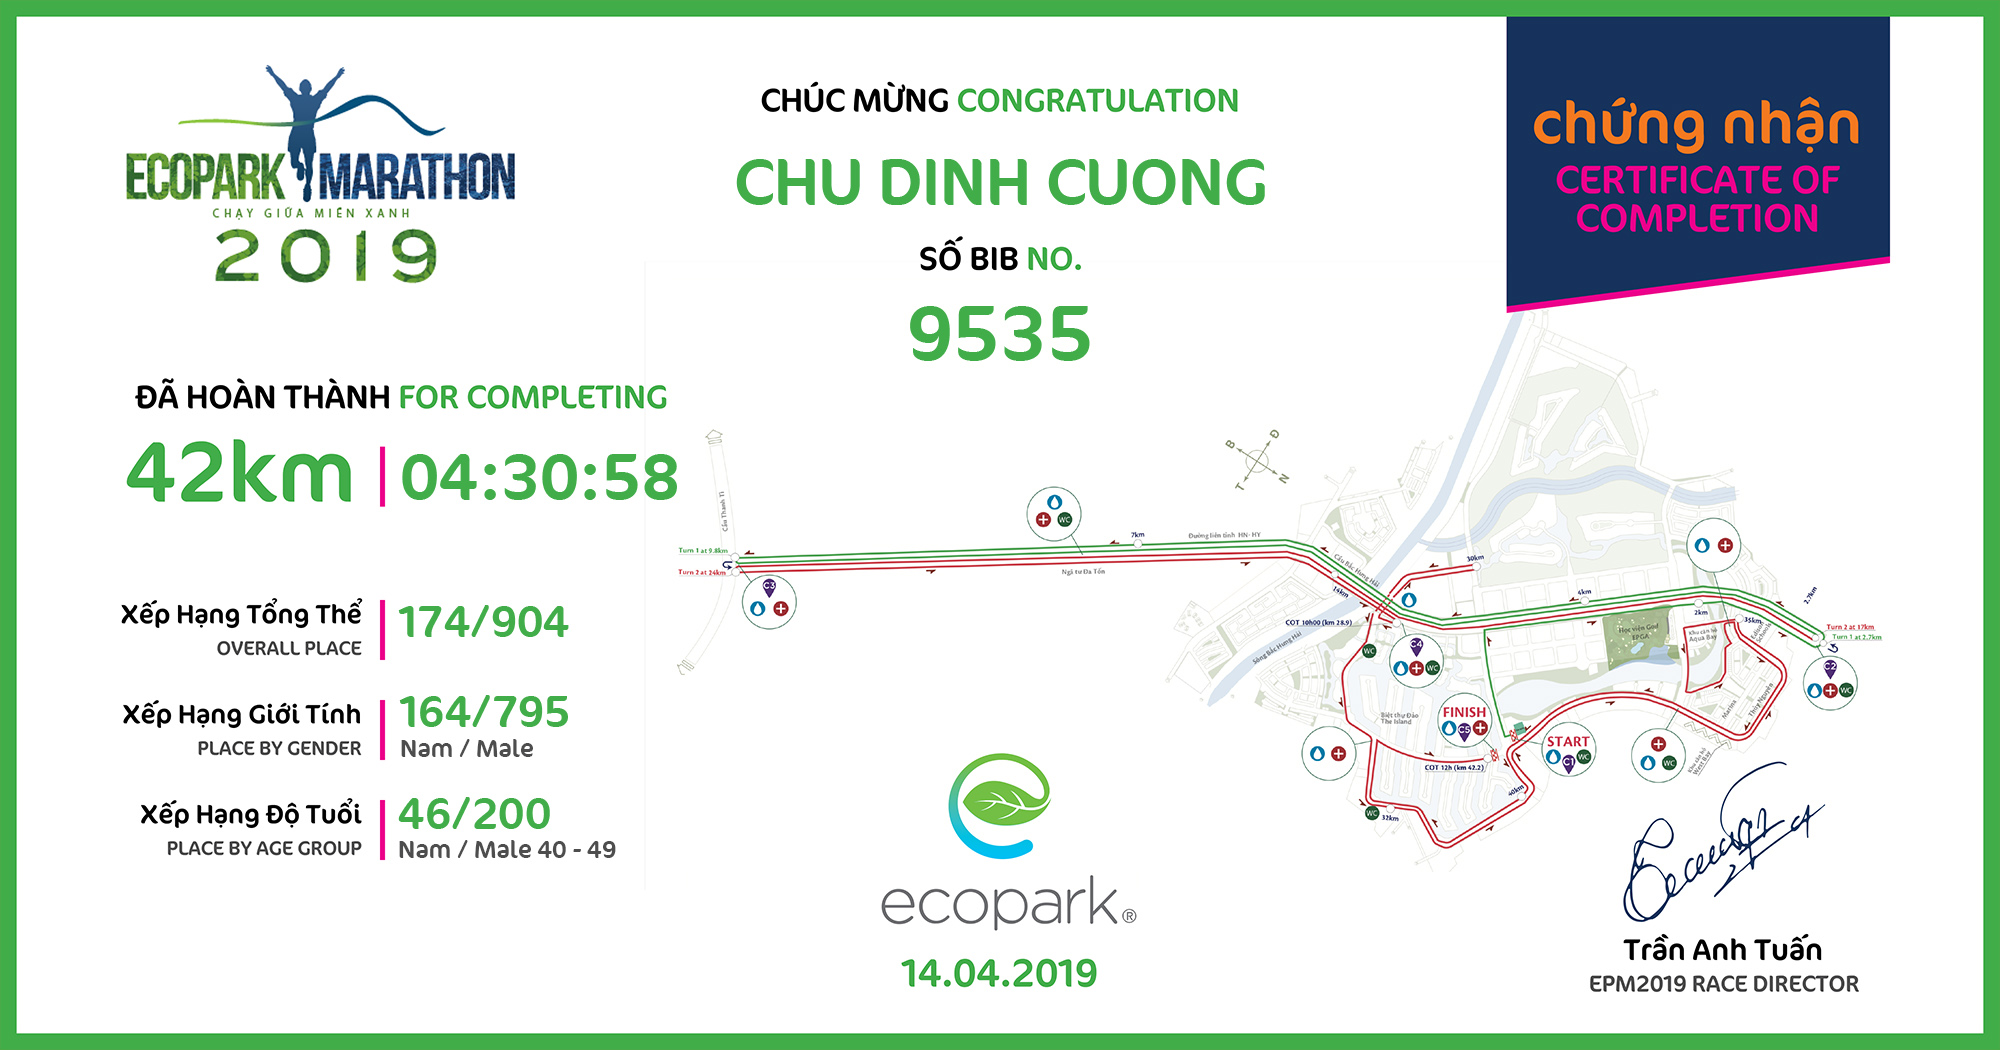 9535 - Chu Dinh Cuong